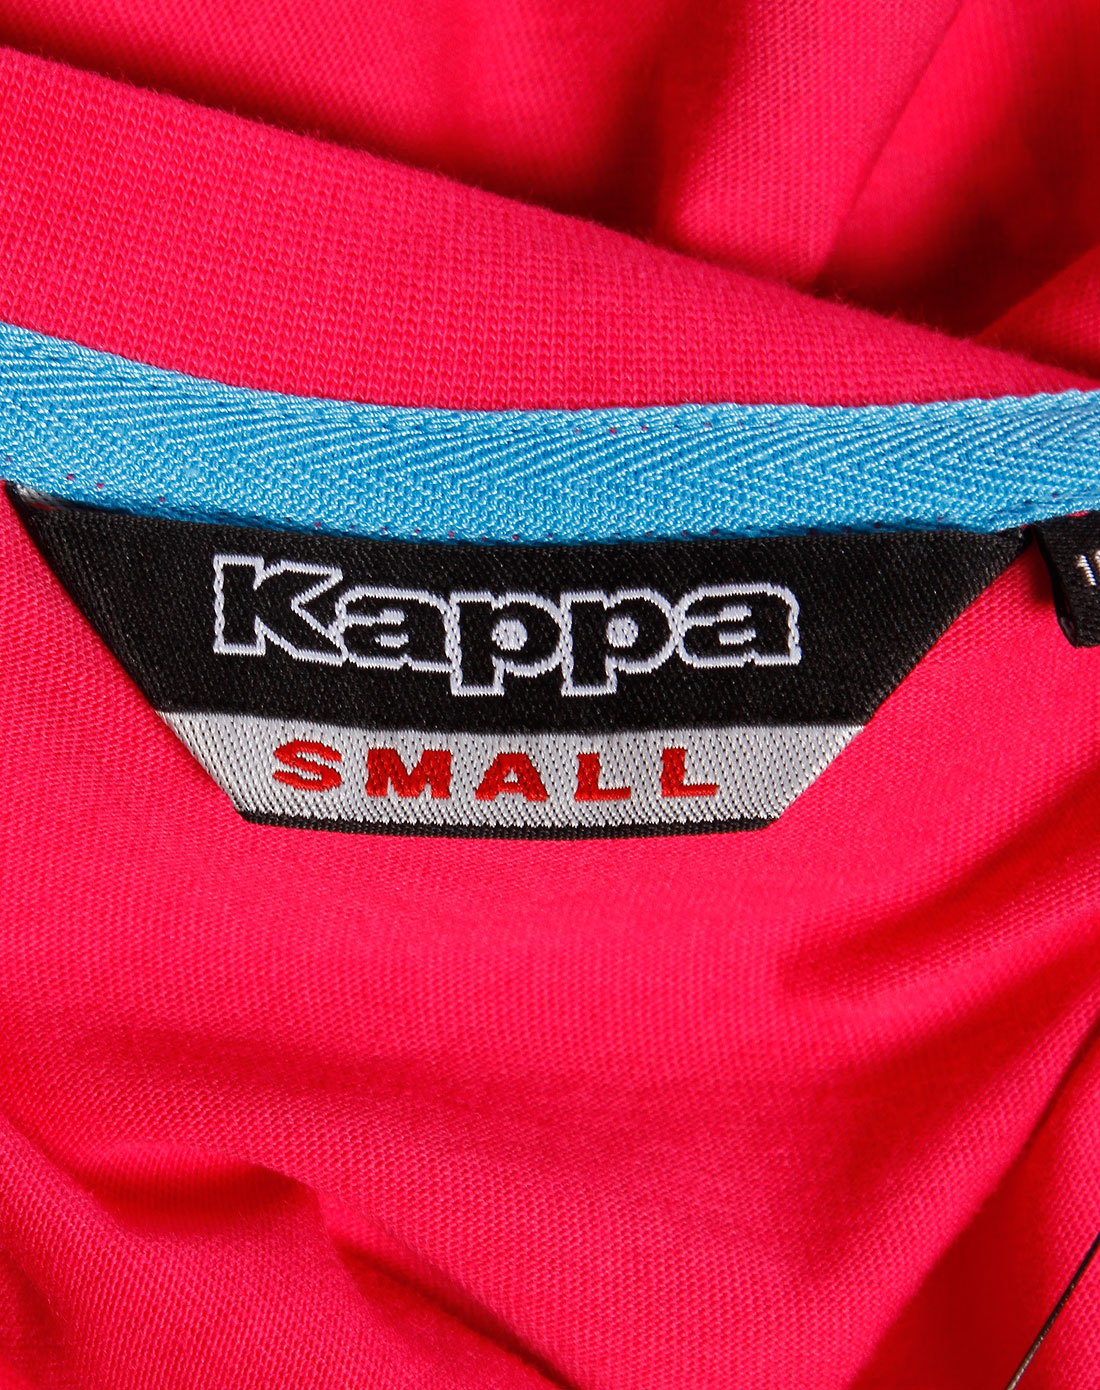 卡帕kappa男装专场-玫红色大logo印花短袖t恤